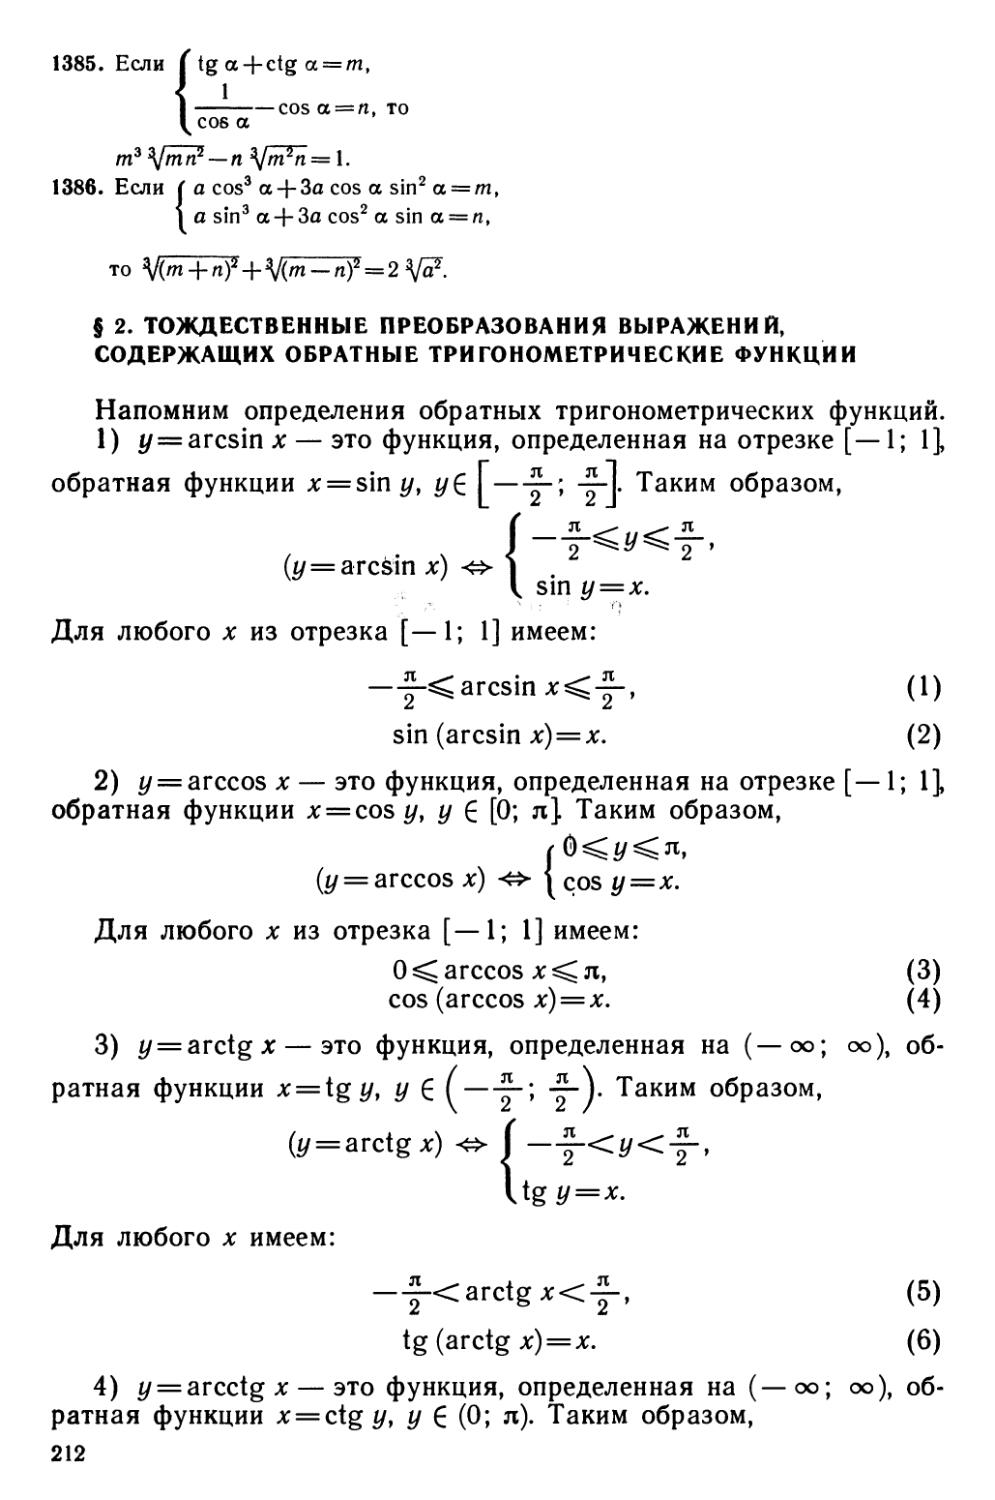 § 2 Тождественные преобразования выражений, содержащих обратные тригонометрические функции